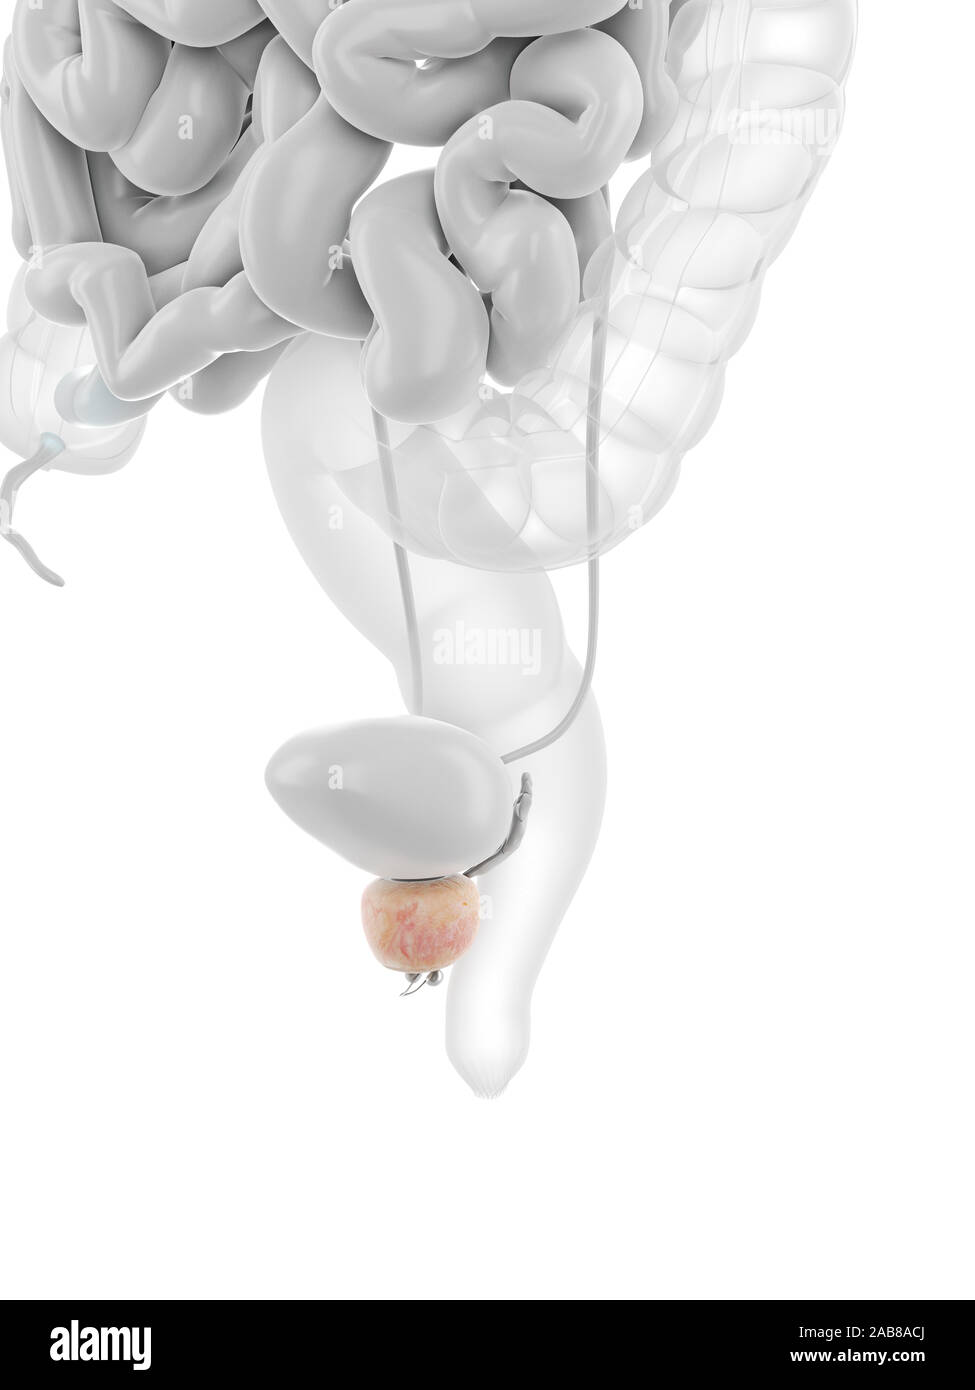 Médicalement en rendu 3D de la prostate illustration exacte Banque D'Images